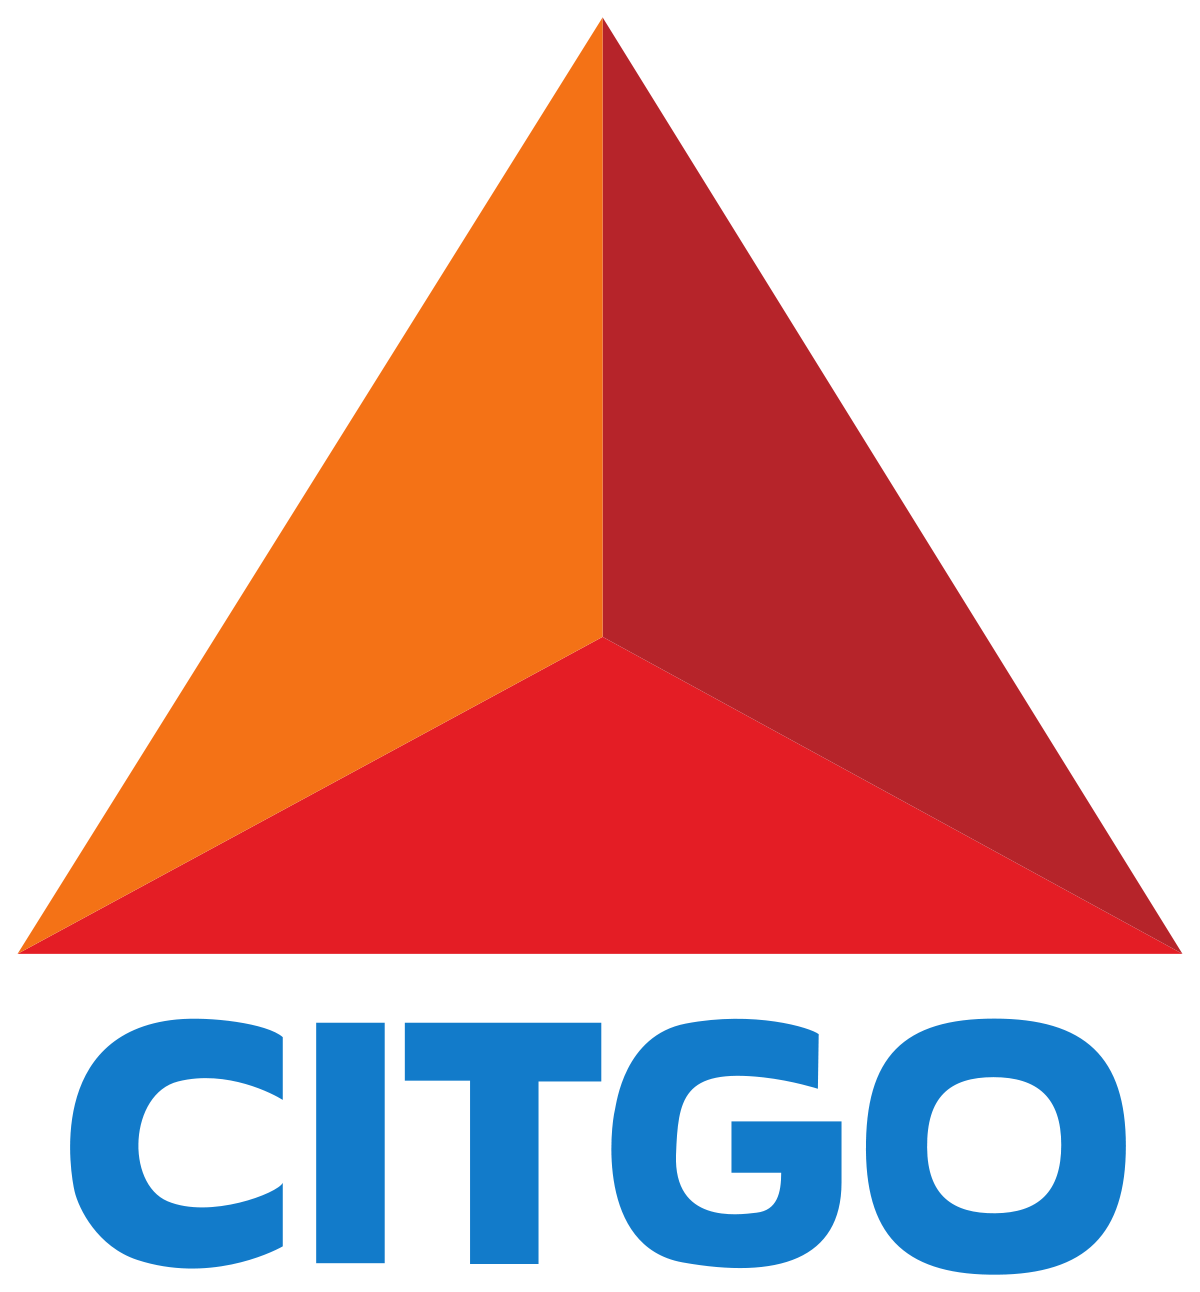 1200px-Citgo_logo.png